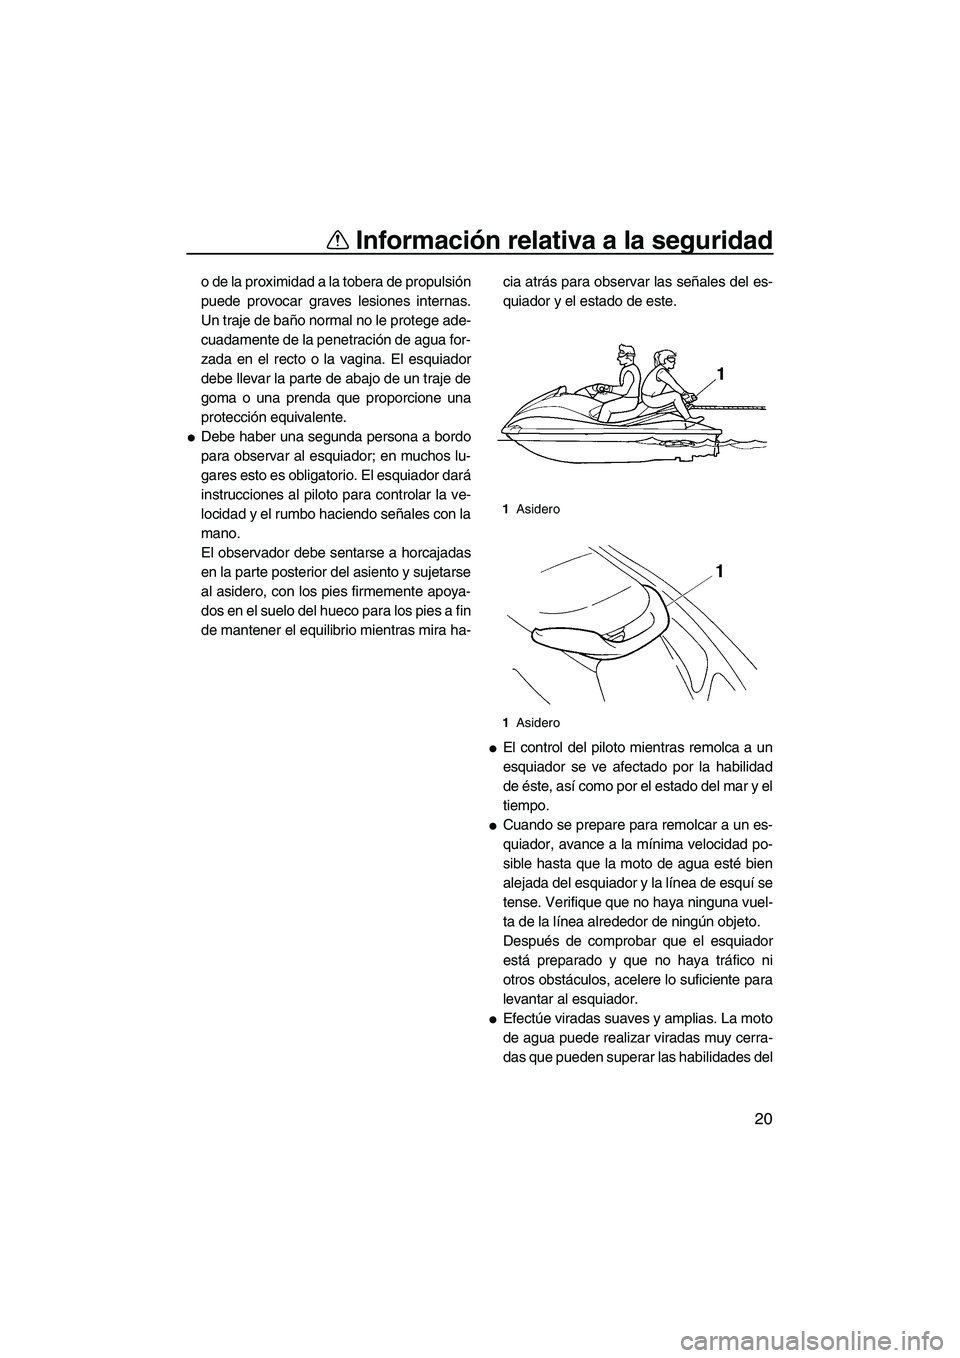 YAMAHA VX DELUXE 2007  Manuale de Empleo (in Spanish) Información relativa a la seguridad
20
o de la proximidad a la tobera de propulsión
puede provocar graves lesiones internas.
Un traje de baño normal no le protege ade-
cuadamente de la penetración